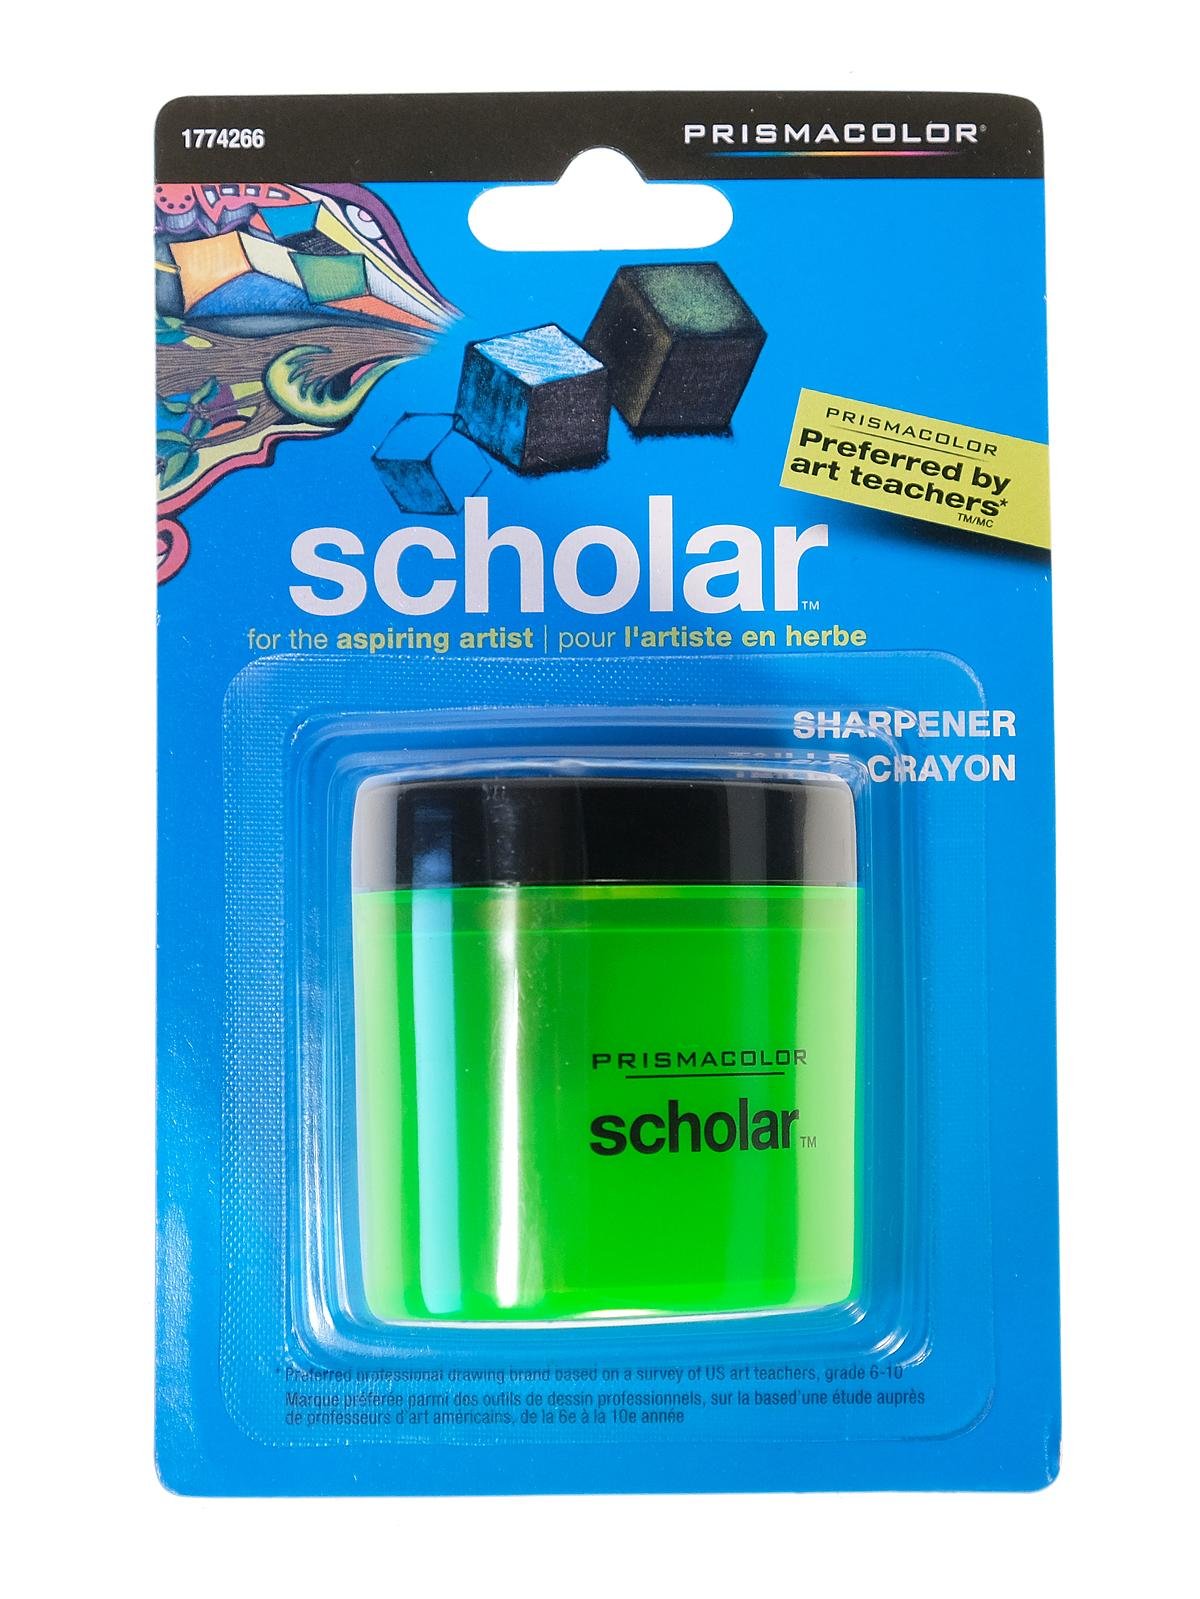 Prismacolor - Scholar Sharpener